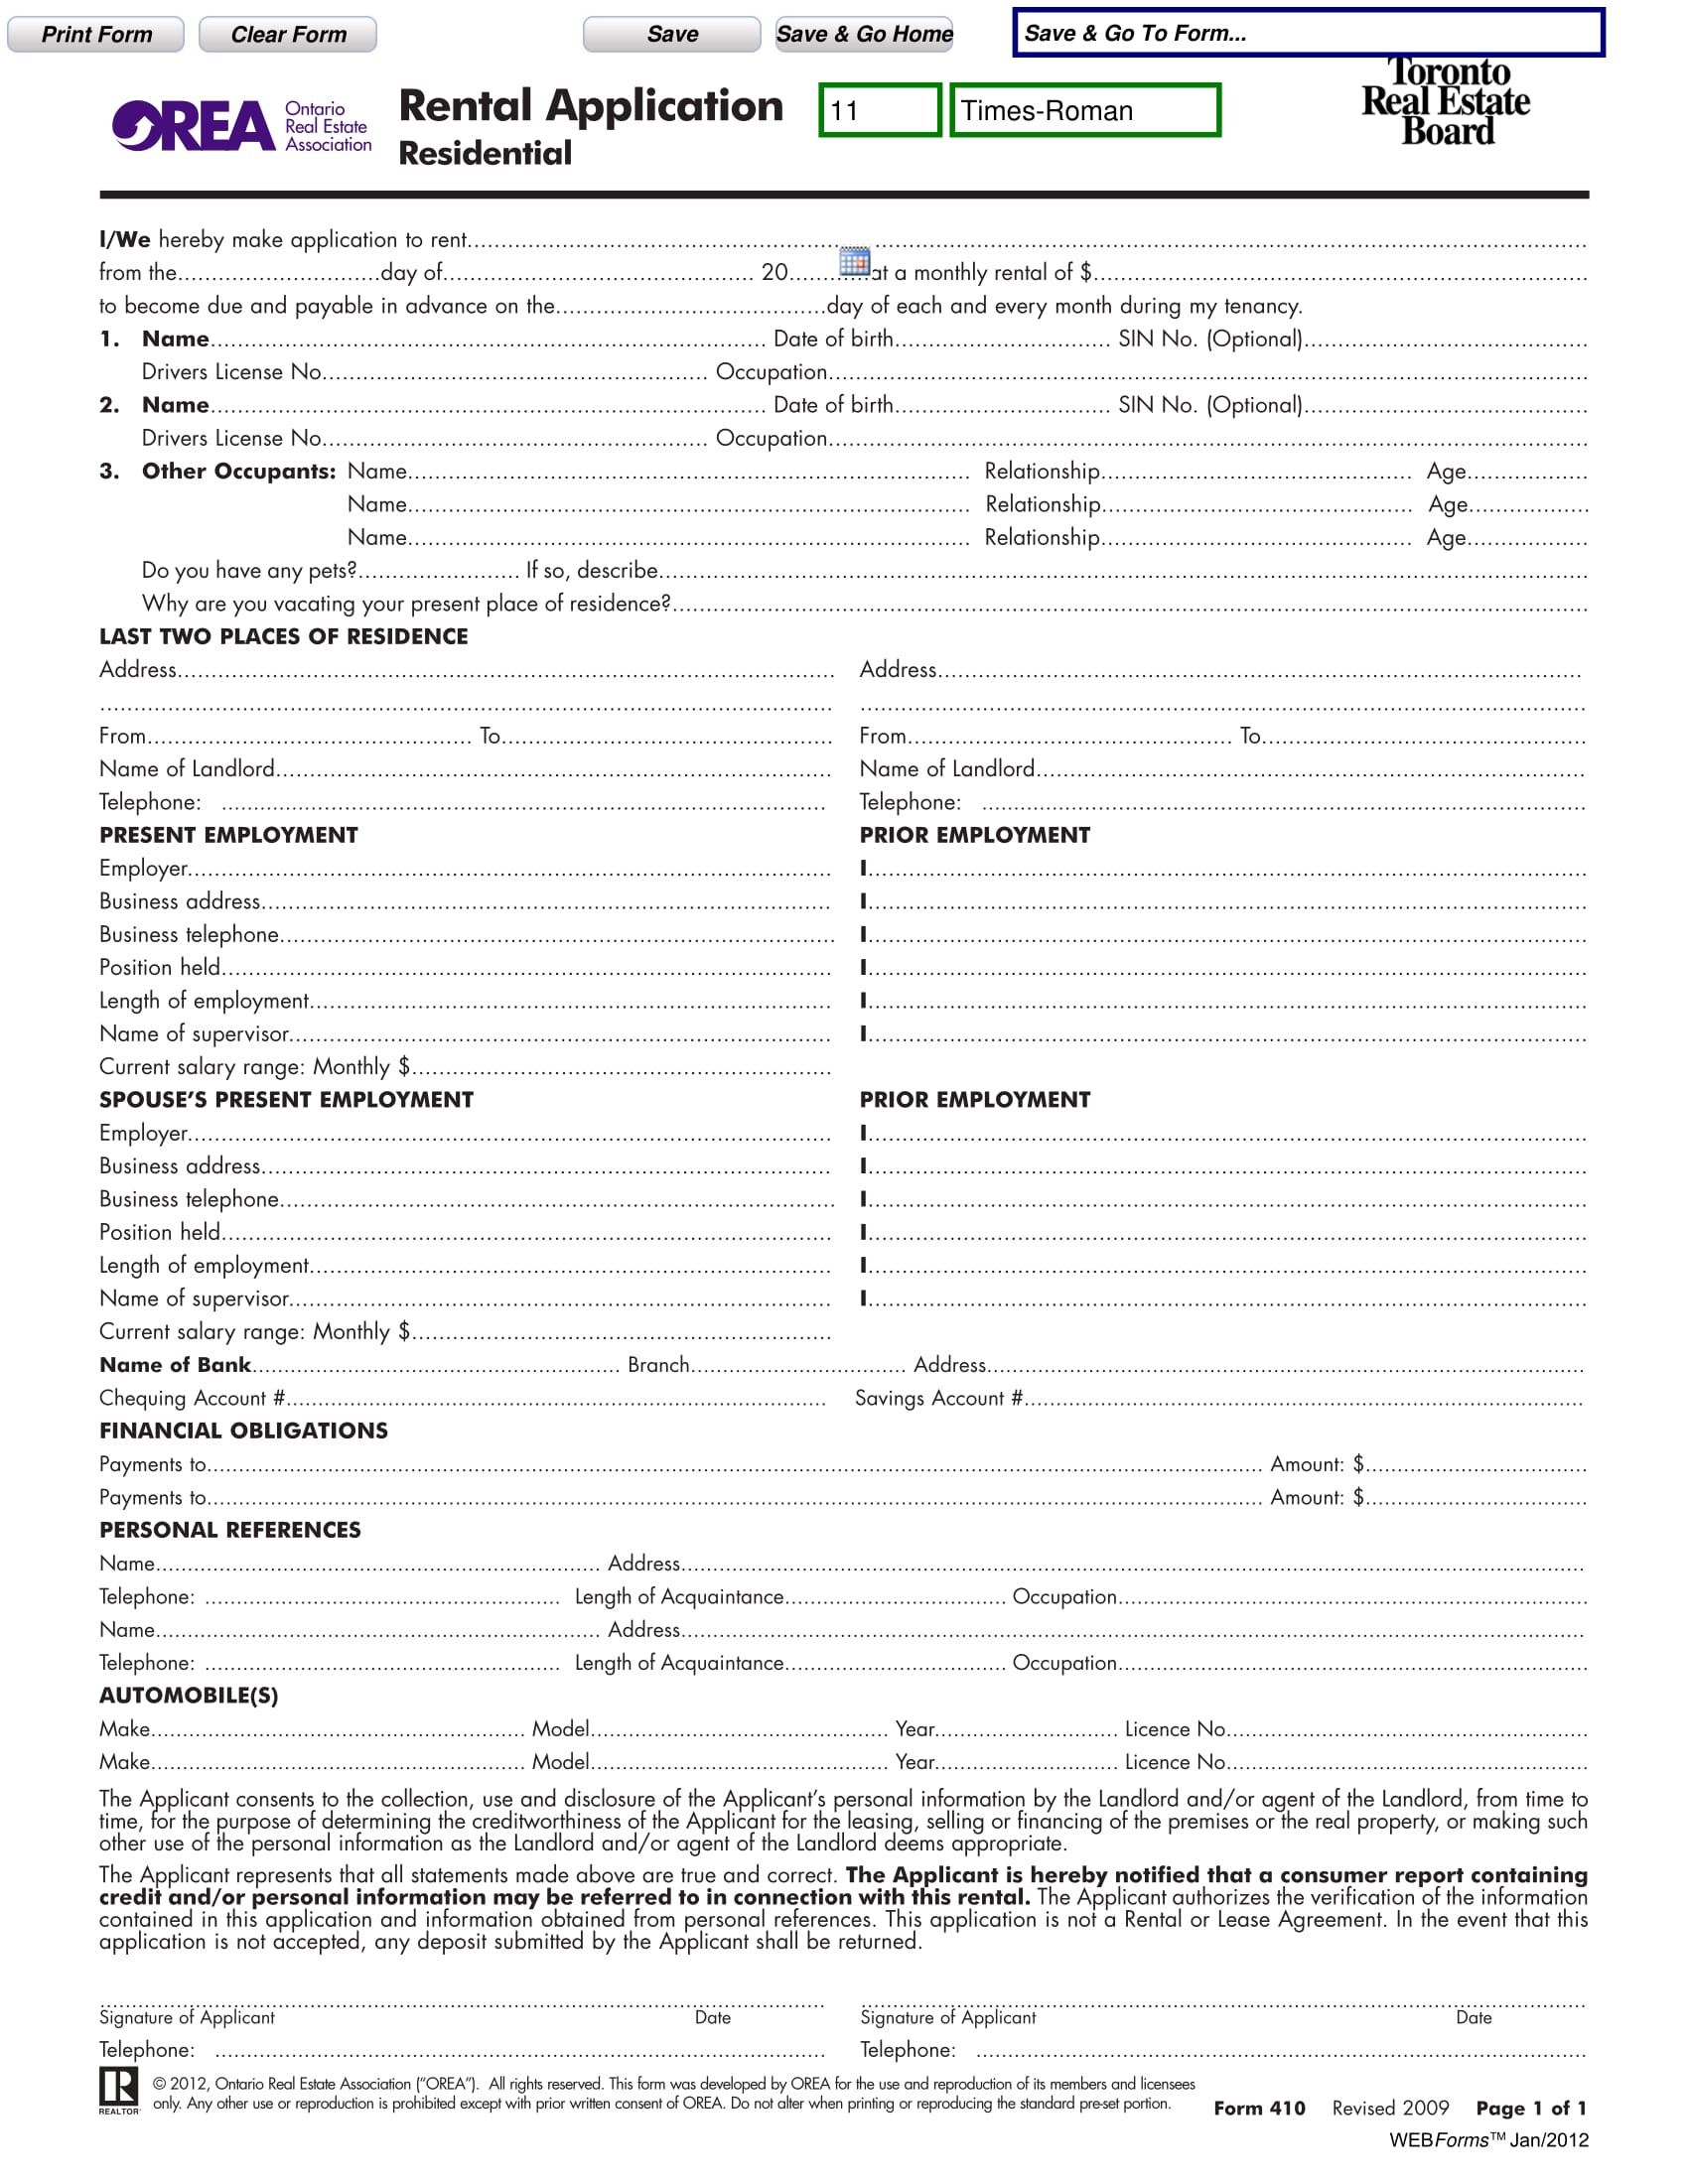 real estate rental application form pdf 1